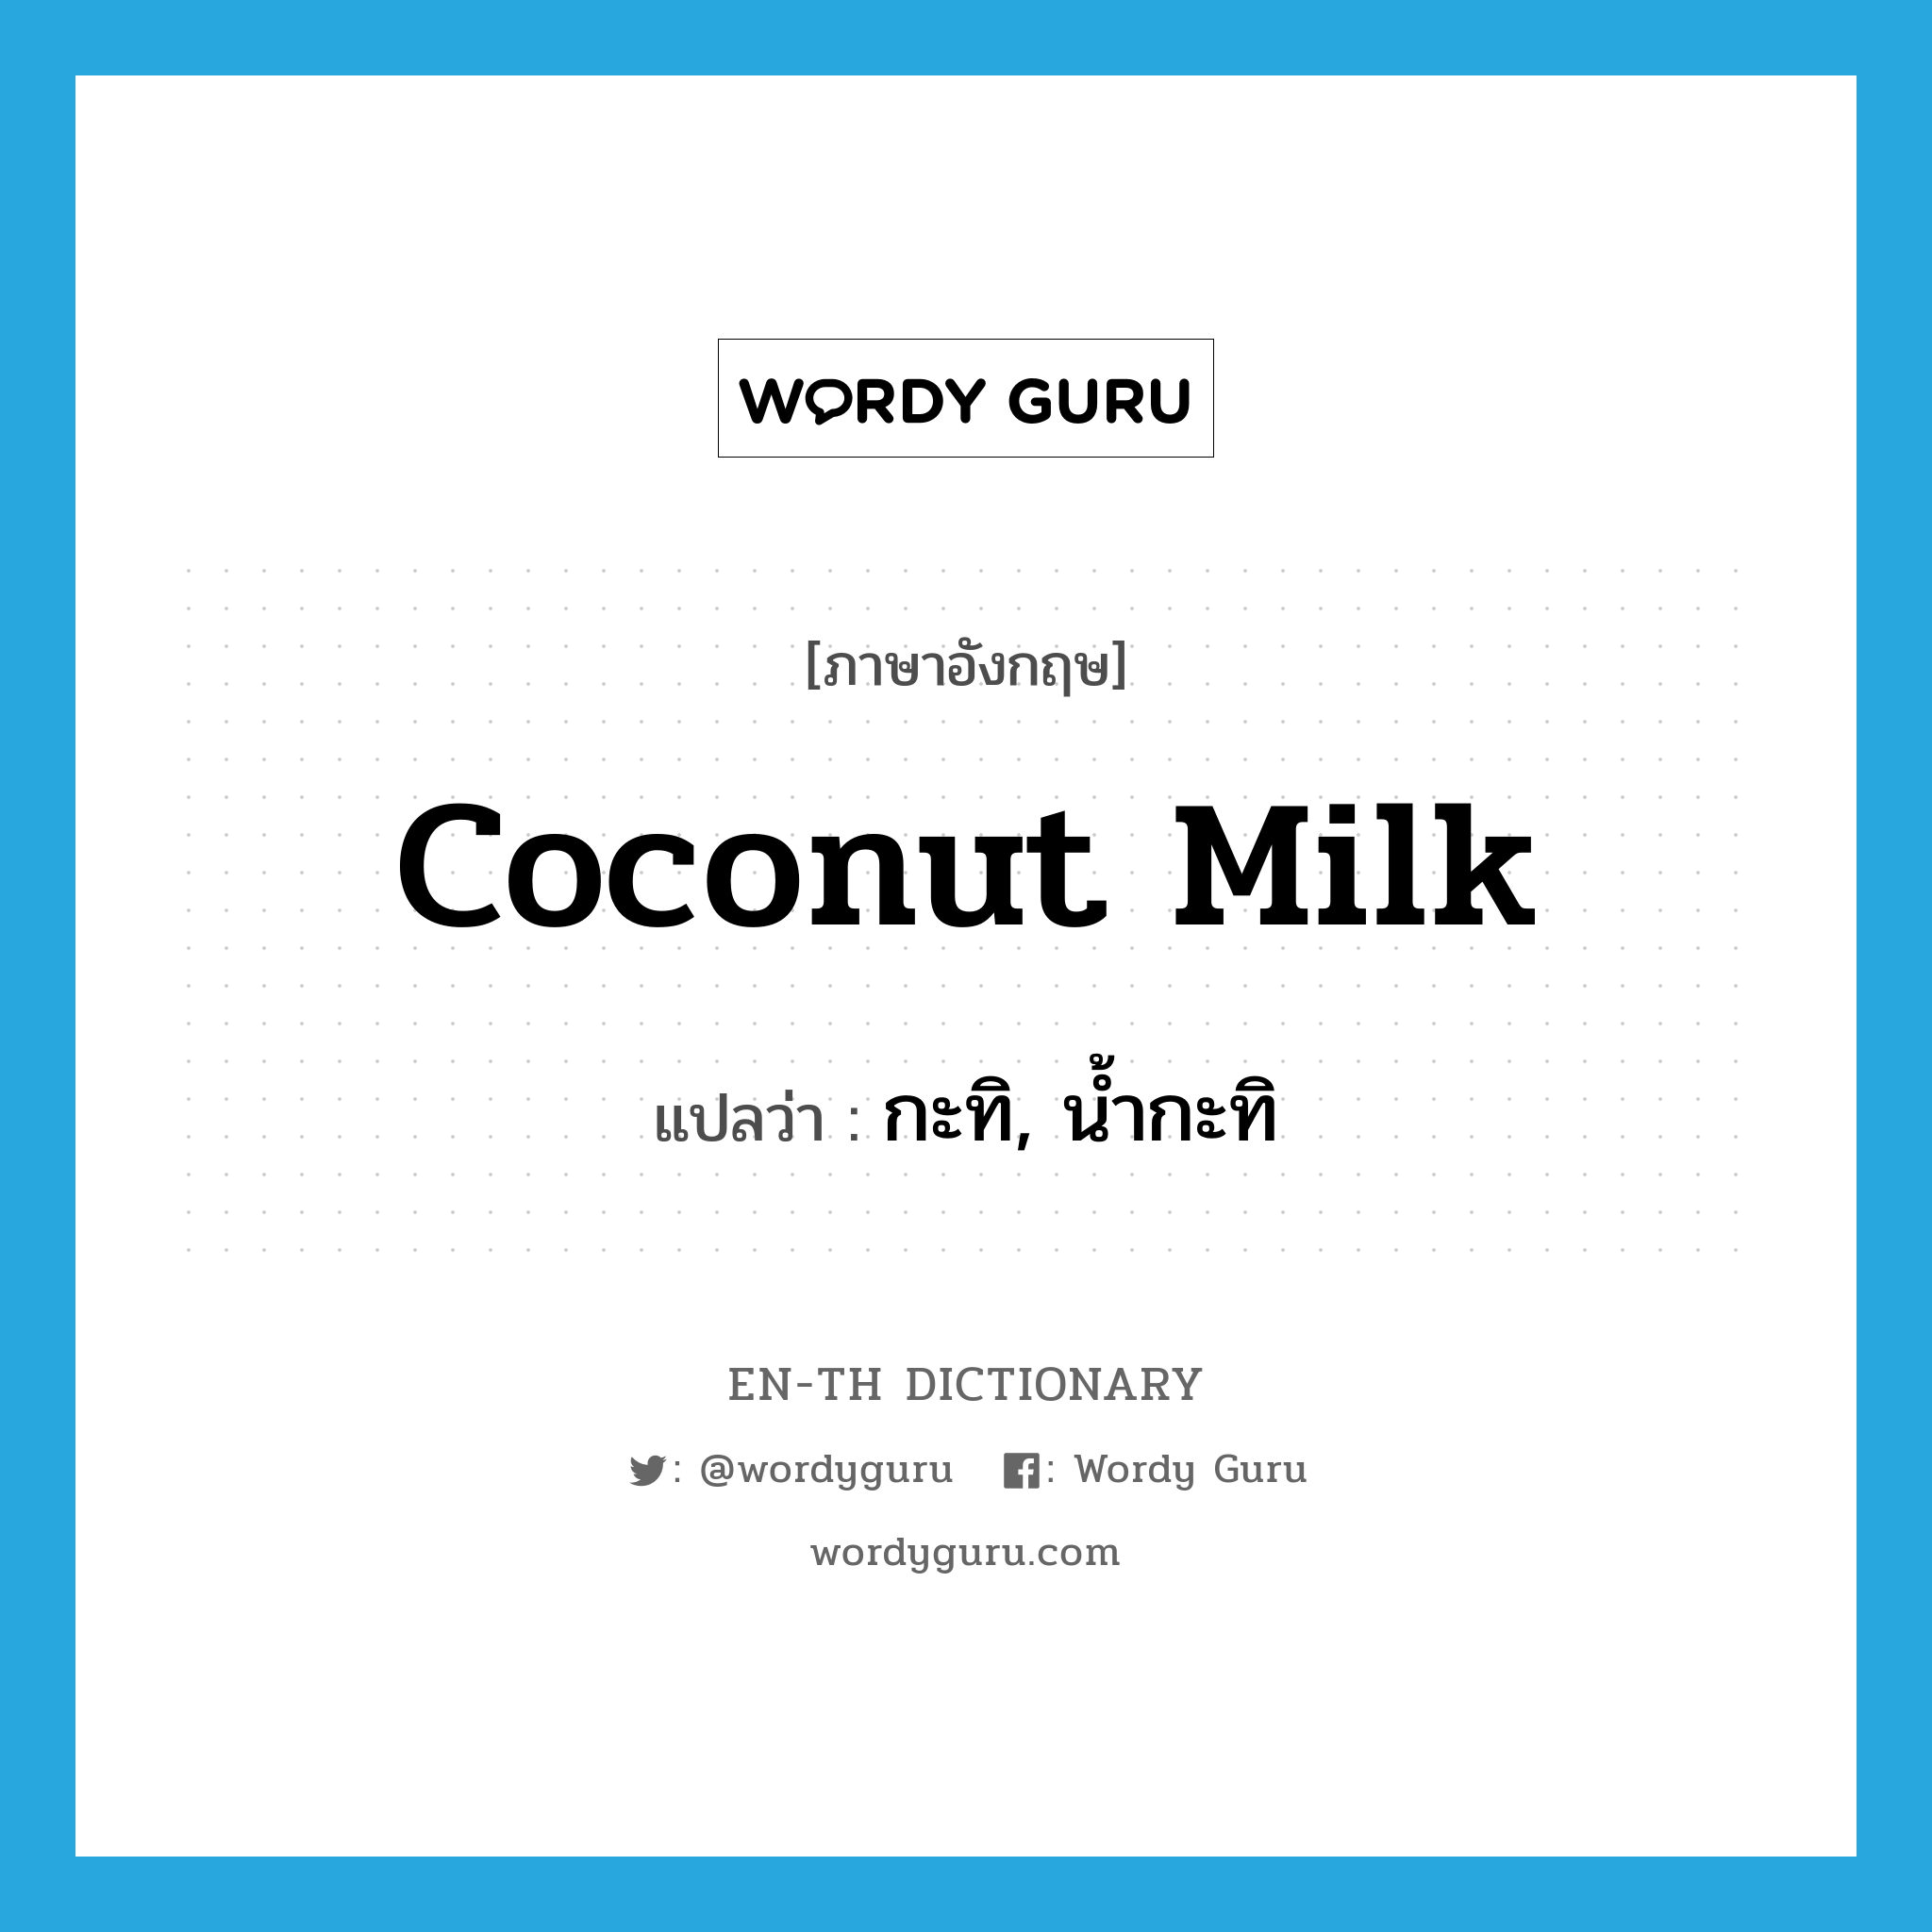 กะทิ, น้ำกะทิ ภาษาอังกฤษ?, คำศัพท์ภาษาอังกฤษ กะทิ, น้ำกะทิ แปลว่า coconut milk ประเภท N หมวด N